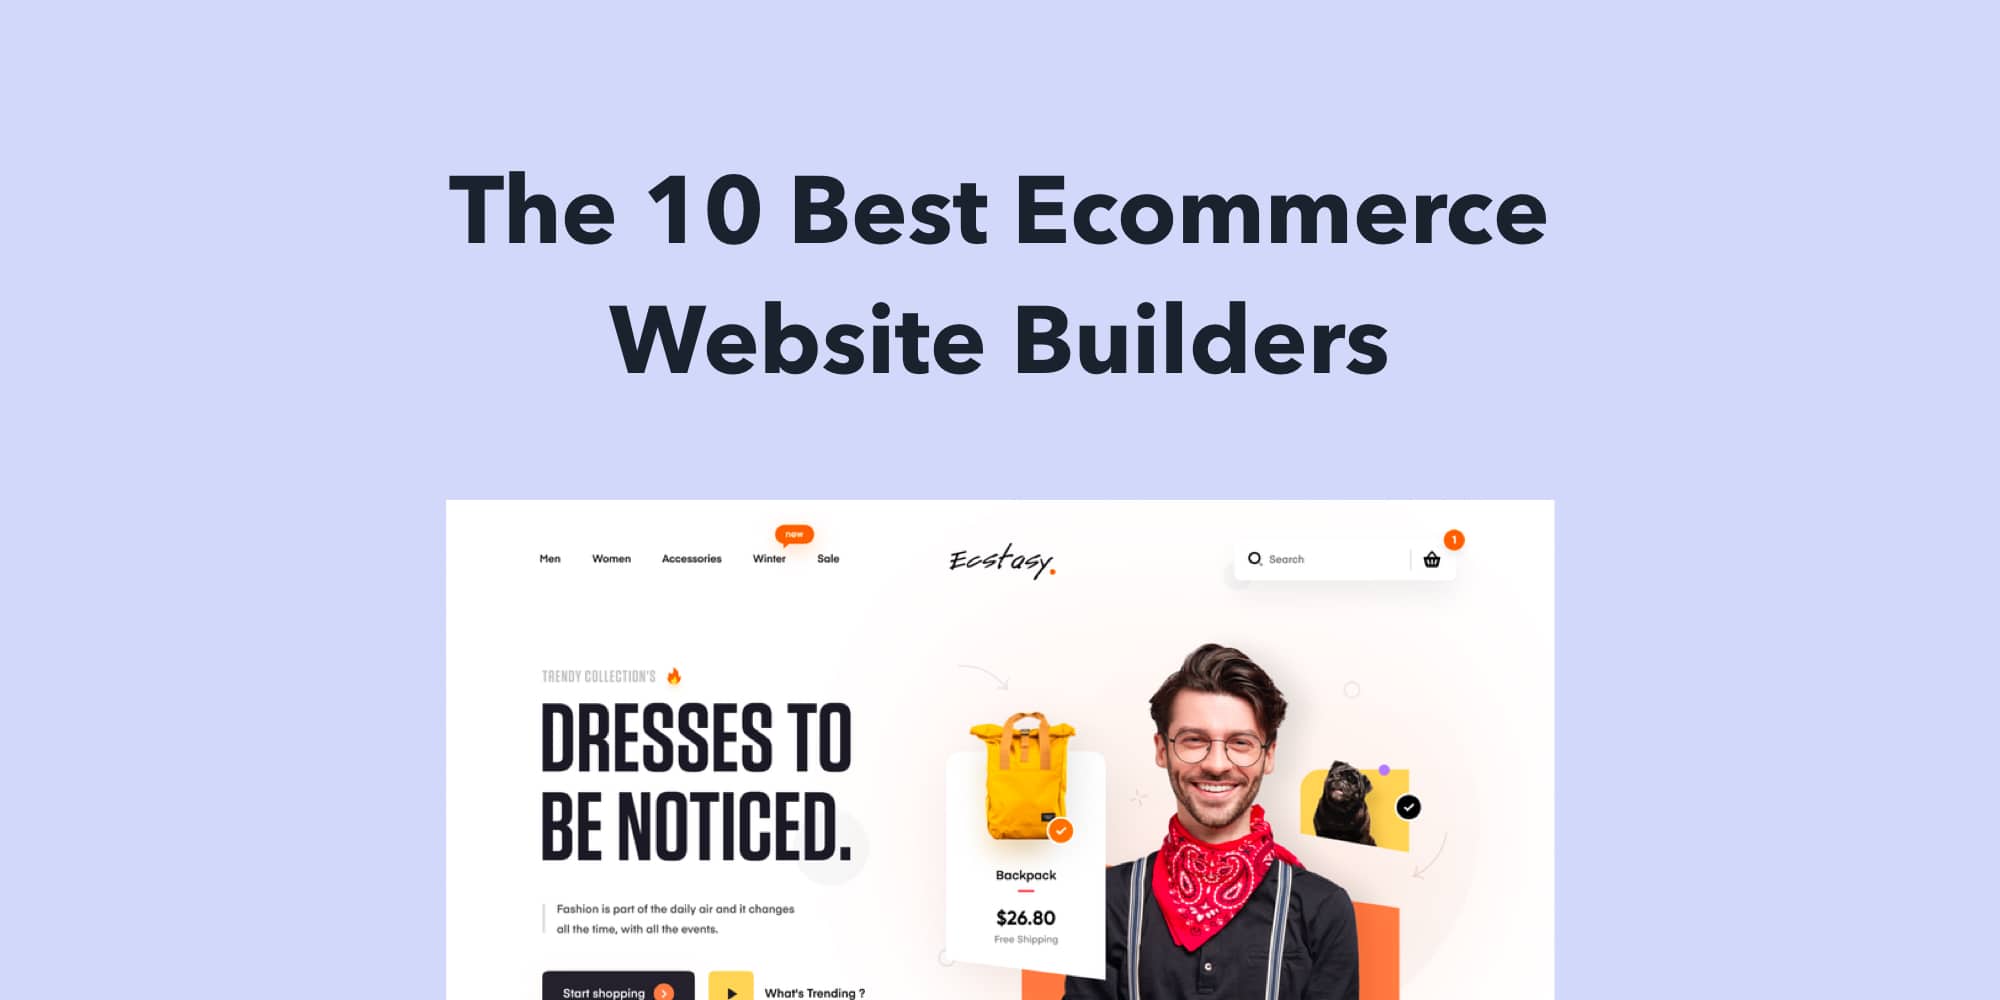 The 10 Best Ecommerce Website Builders